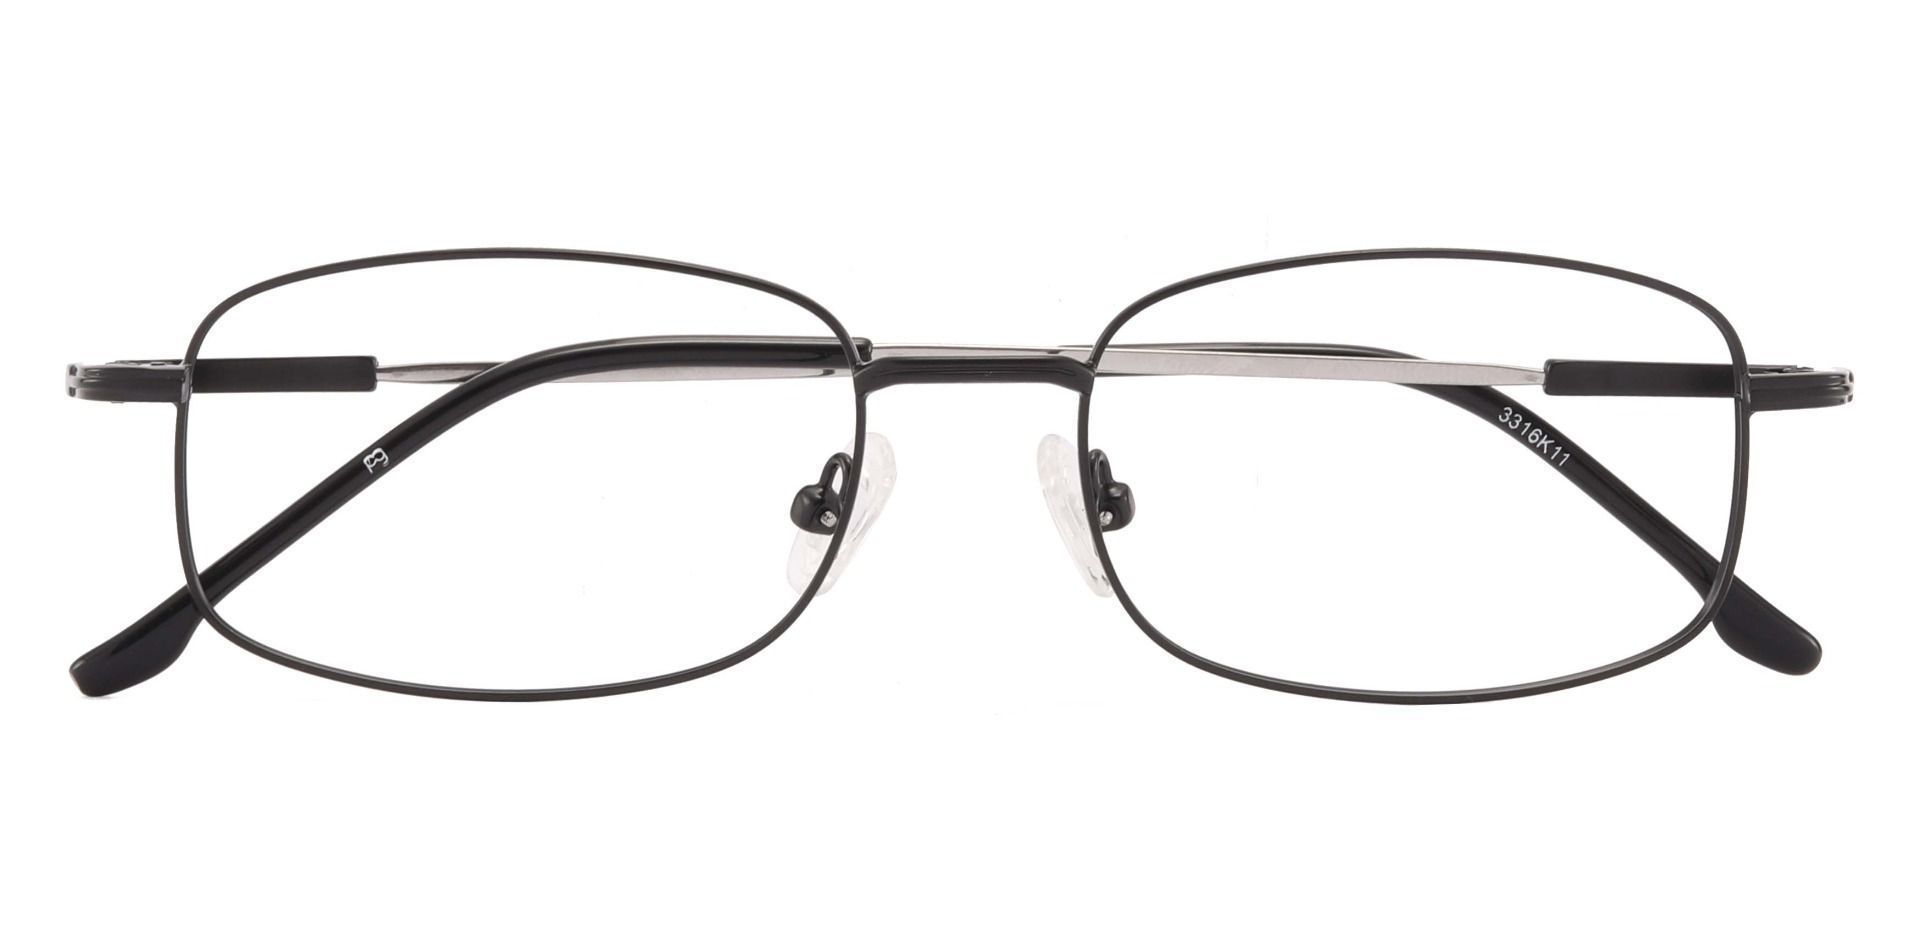 Tupelo Rectangle Prescription Glasses - Black